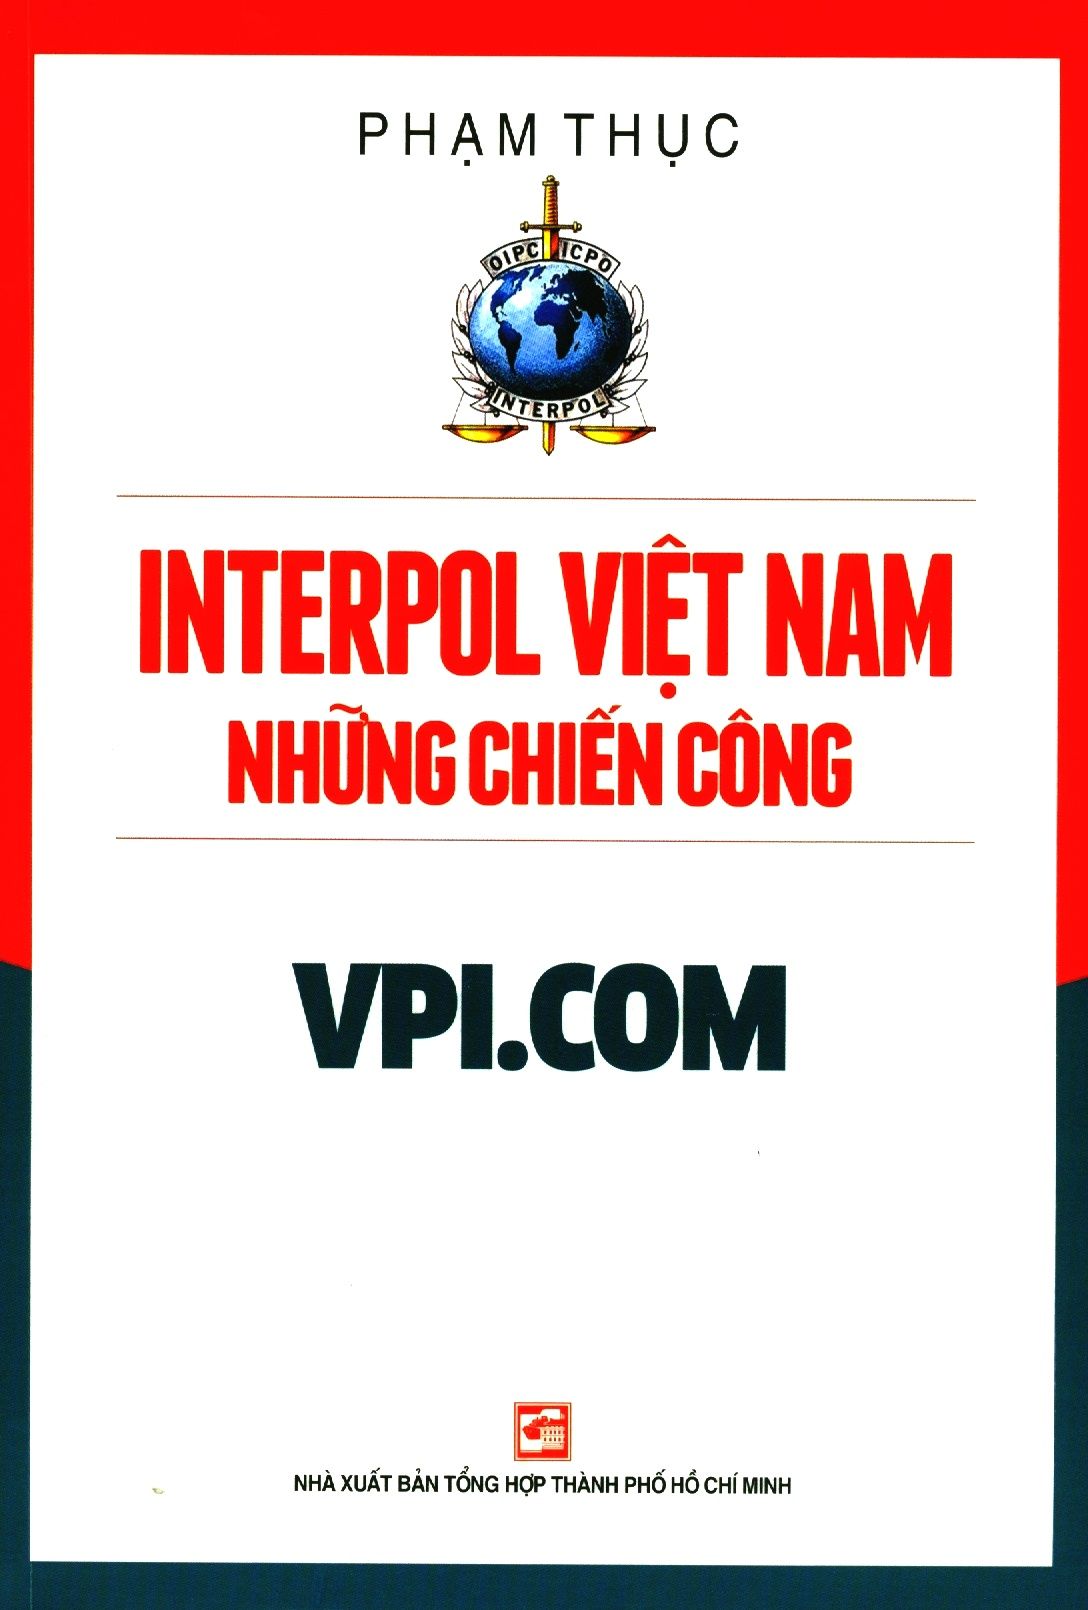  Interpol Việt Nam - Những Chiến Công VPI.COM 